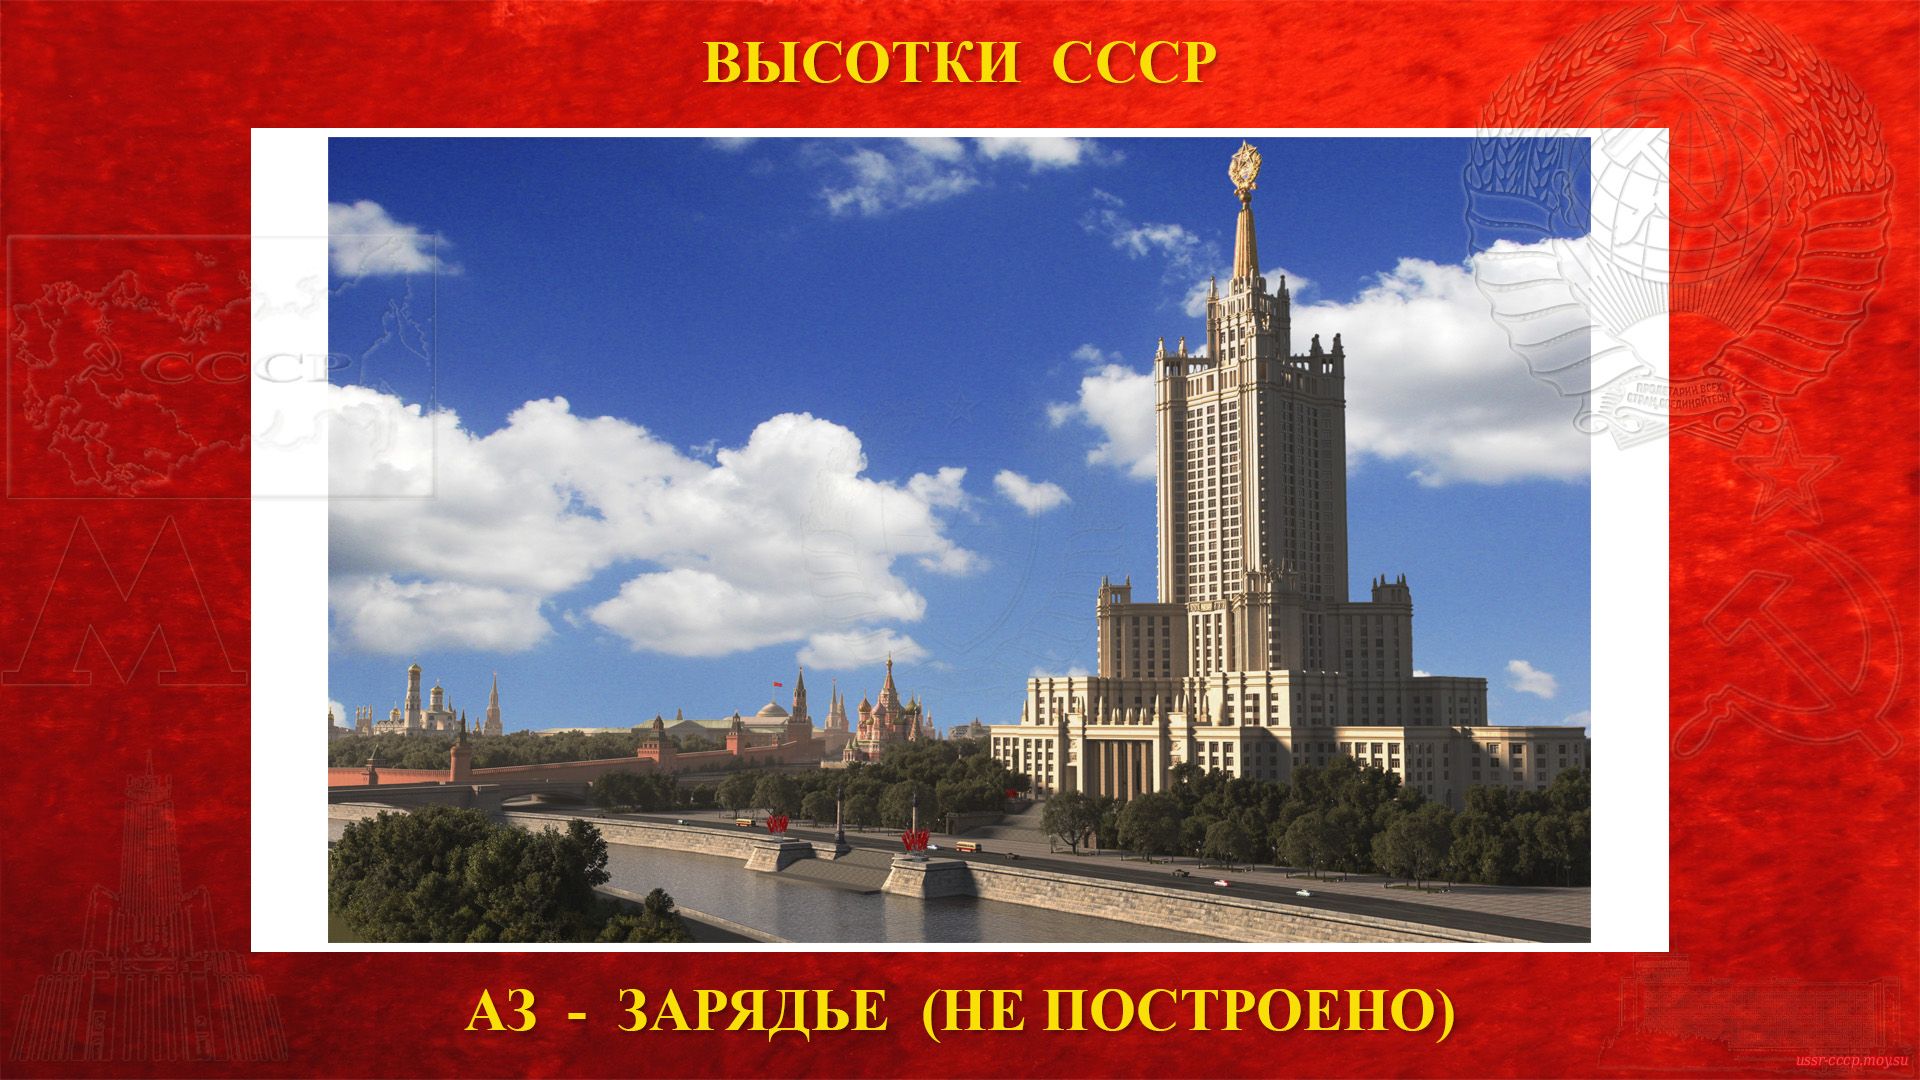 Административное здание Зарядье (Москва) — (Сталинская высотка) — История строительства высотки (1948—1952) (не построена повествование))